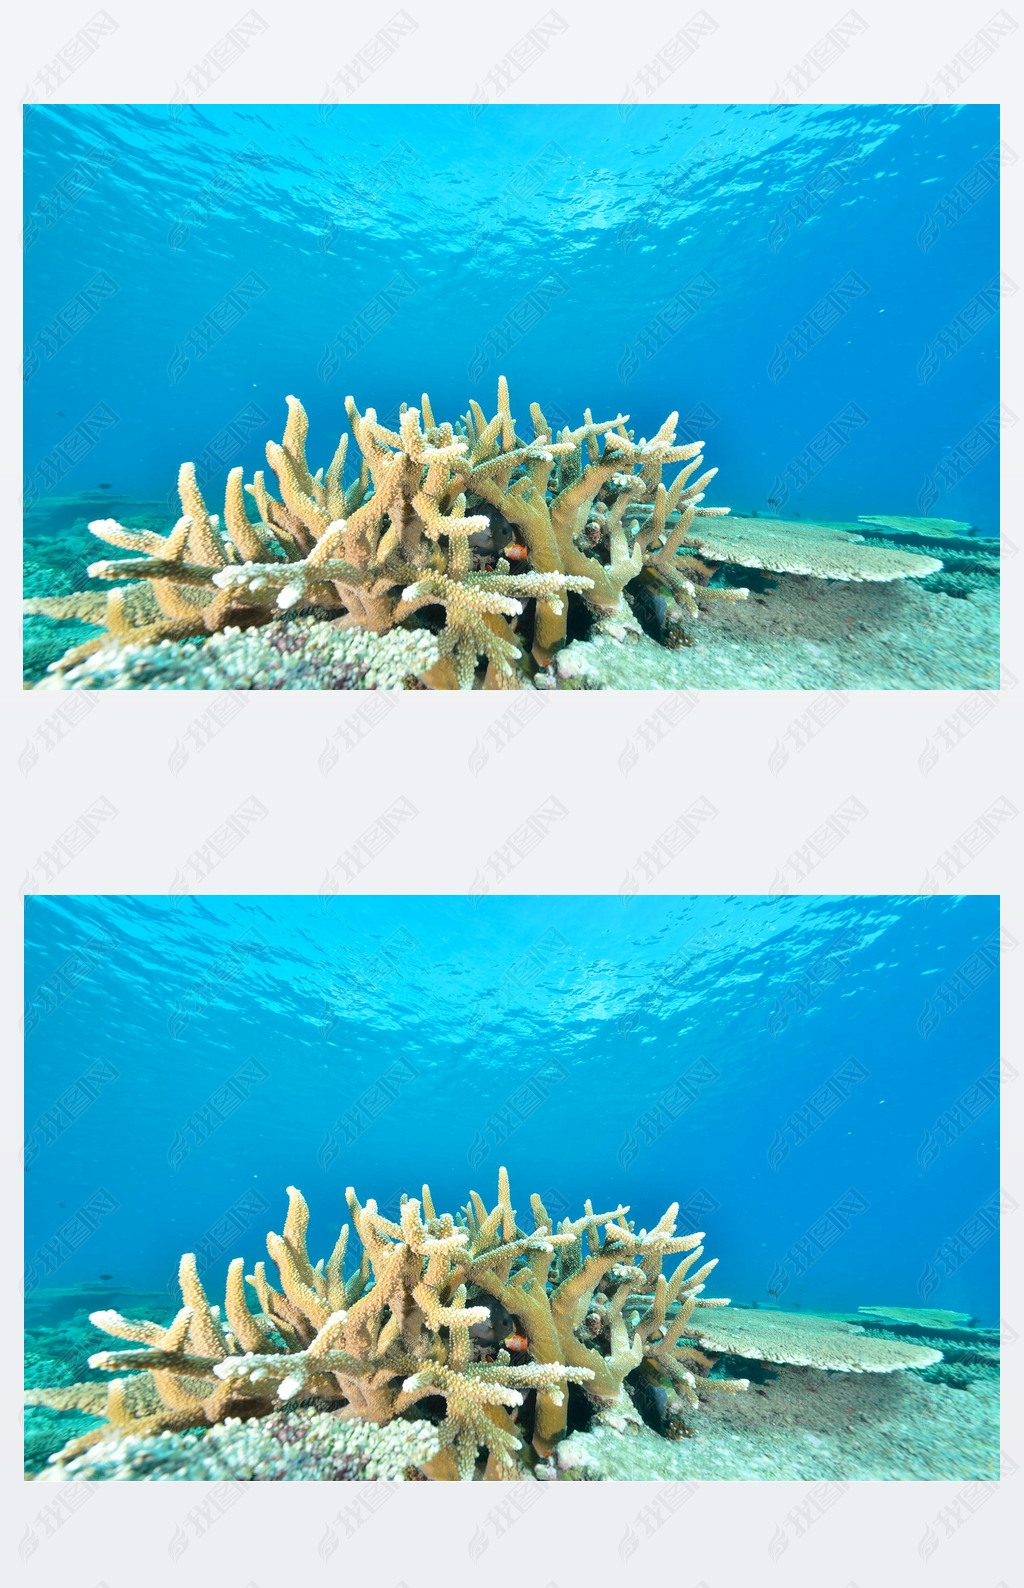 Sea or ocean underwater with coral reef